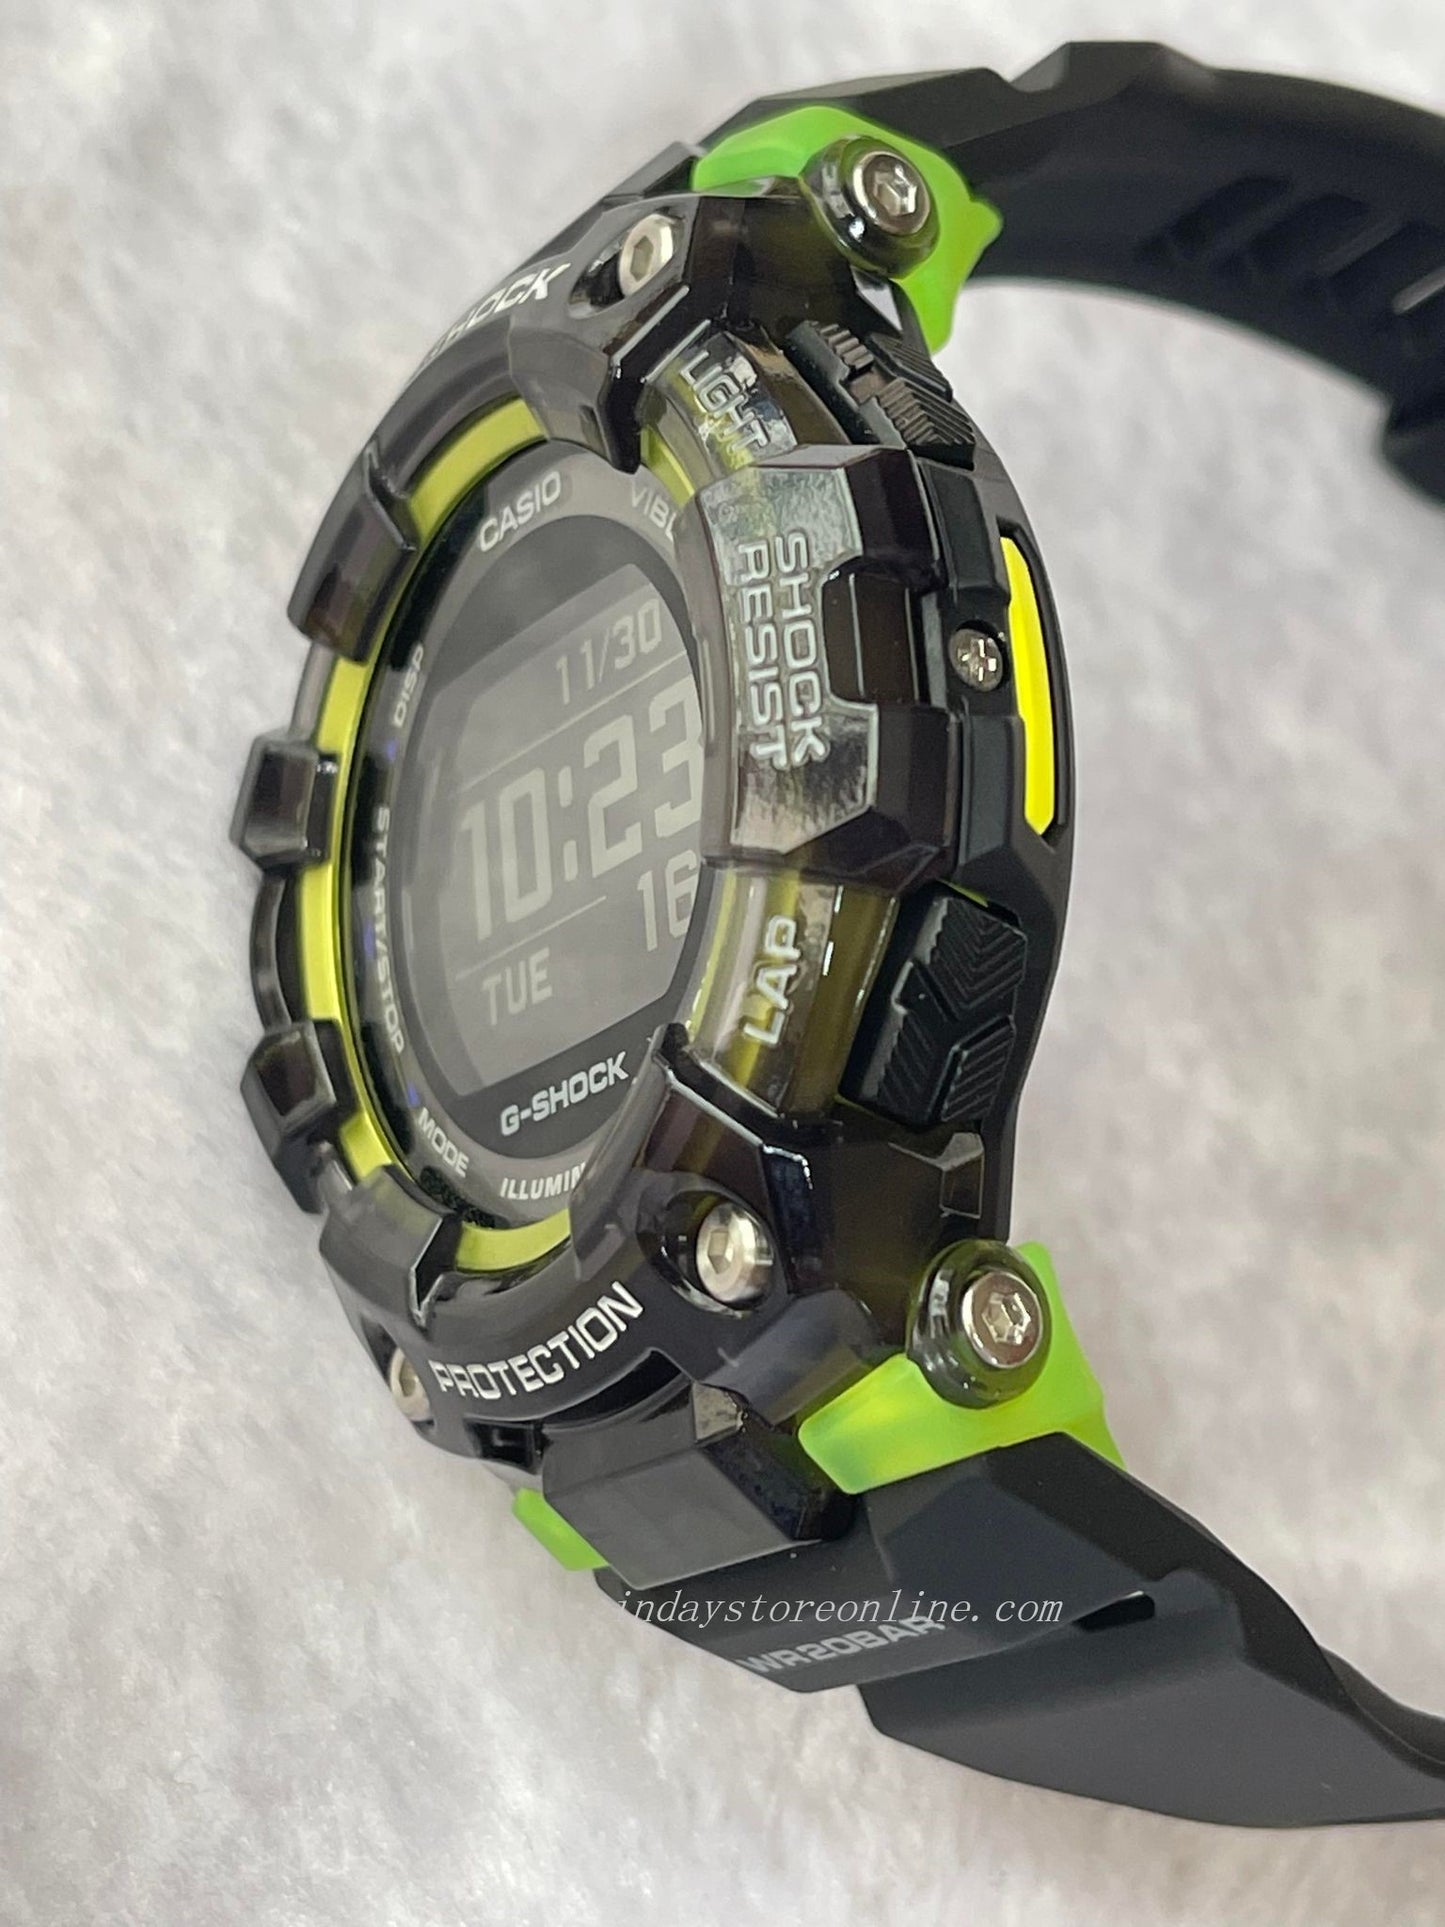 Casio G-Shock Men's Watch GBD-100SM-1